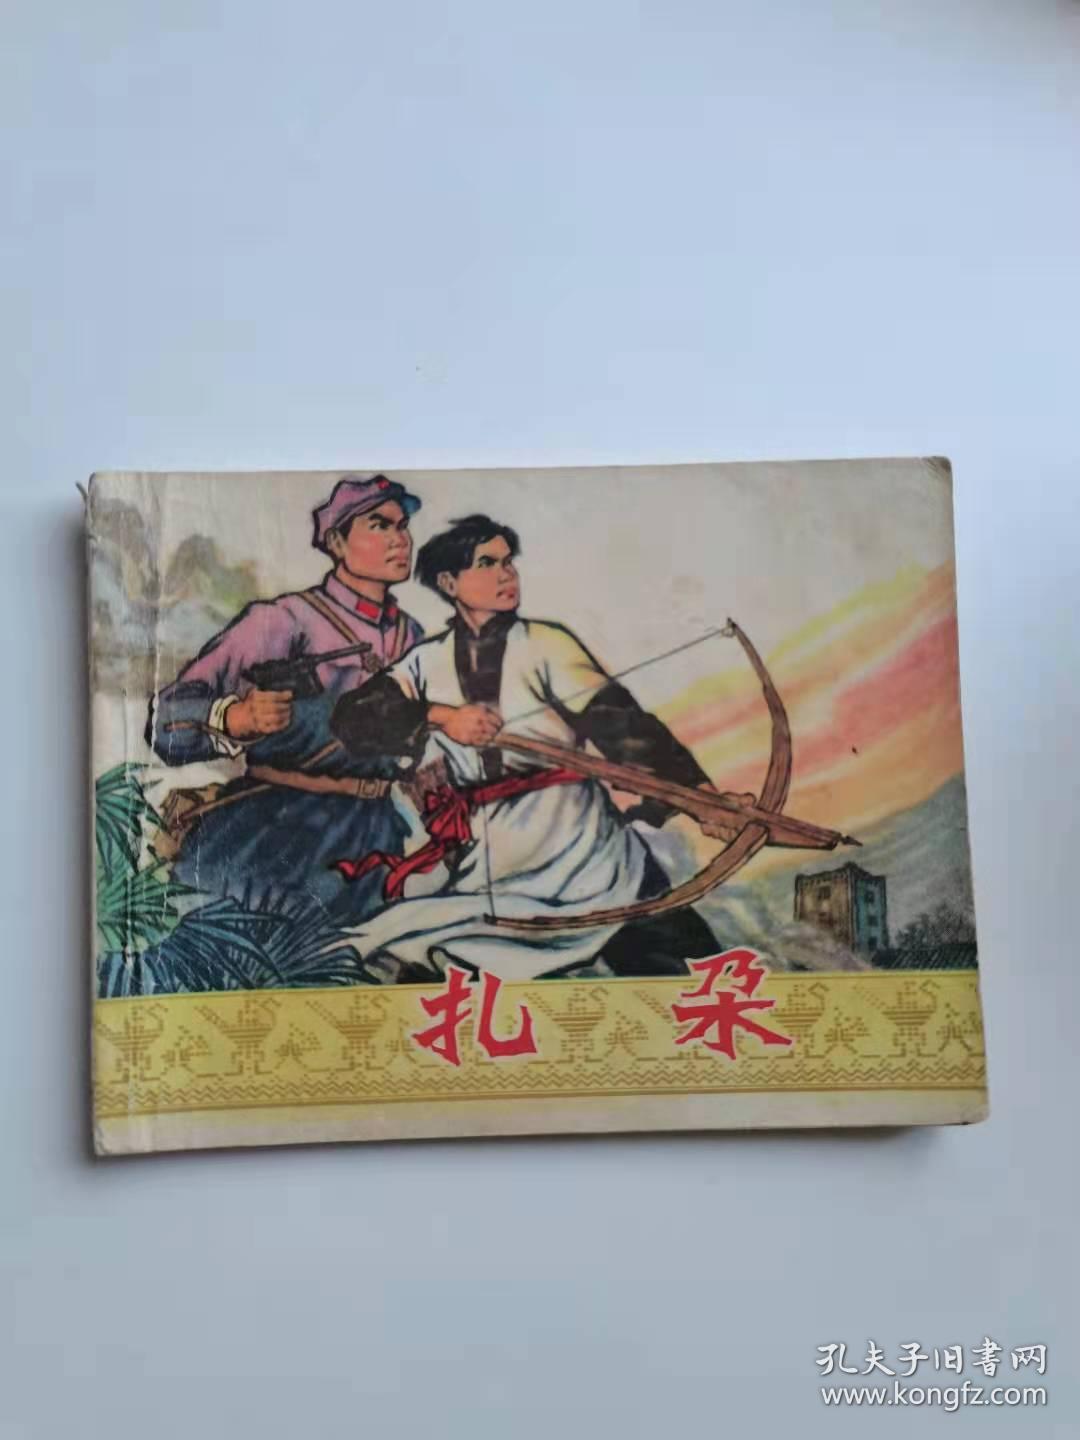 扎朵，云南人民，1974年。
40元